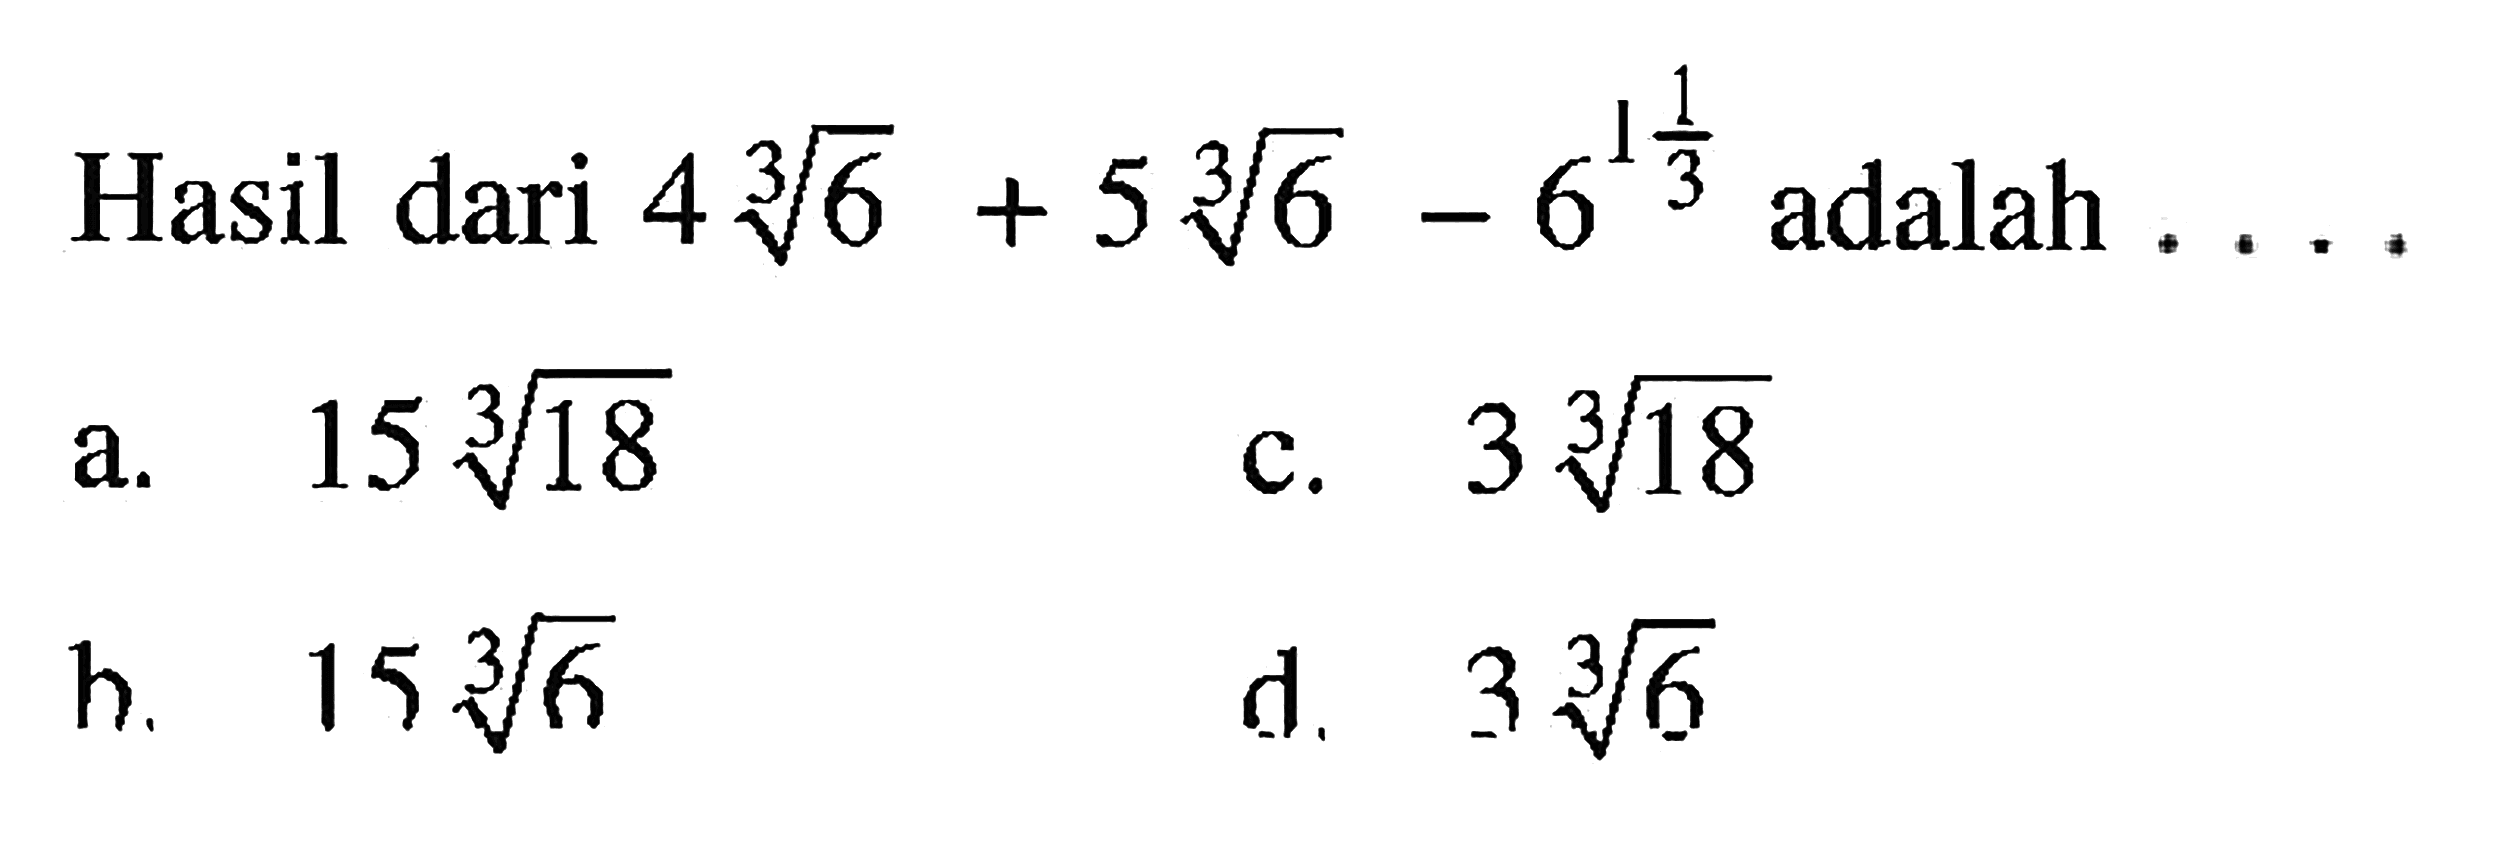 Hasil dari 4 6^(1/3) + 5 6^(1/3) - 6^(1 1/3) adalah ....